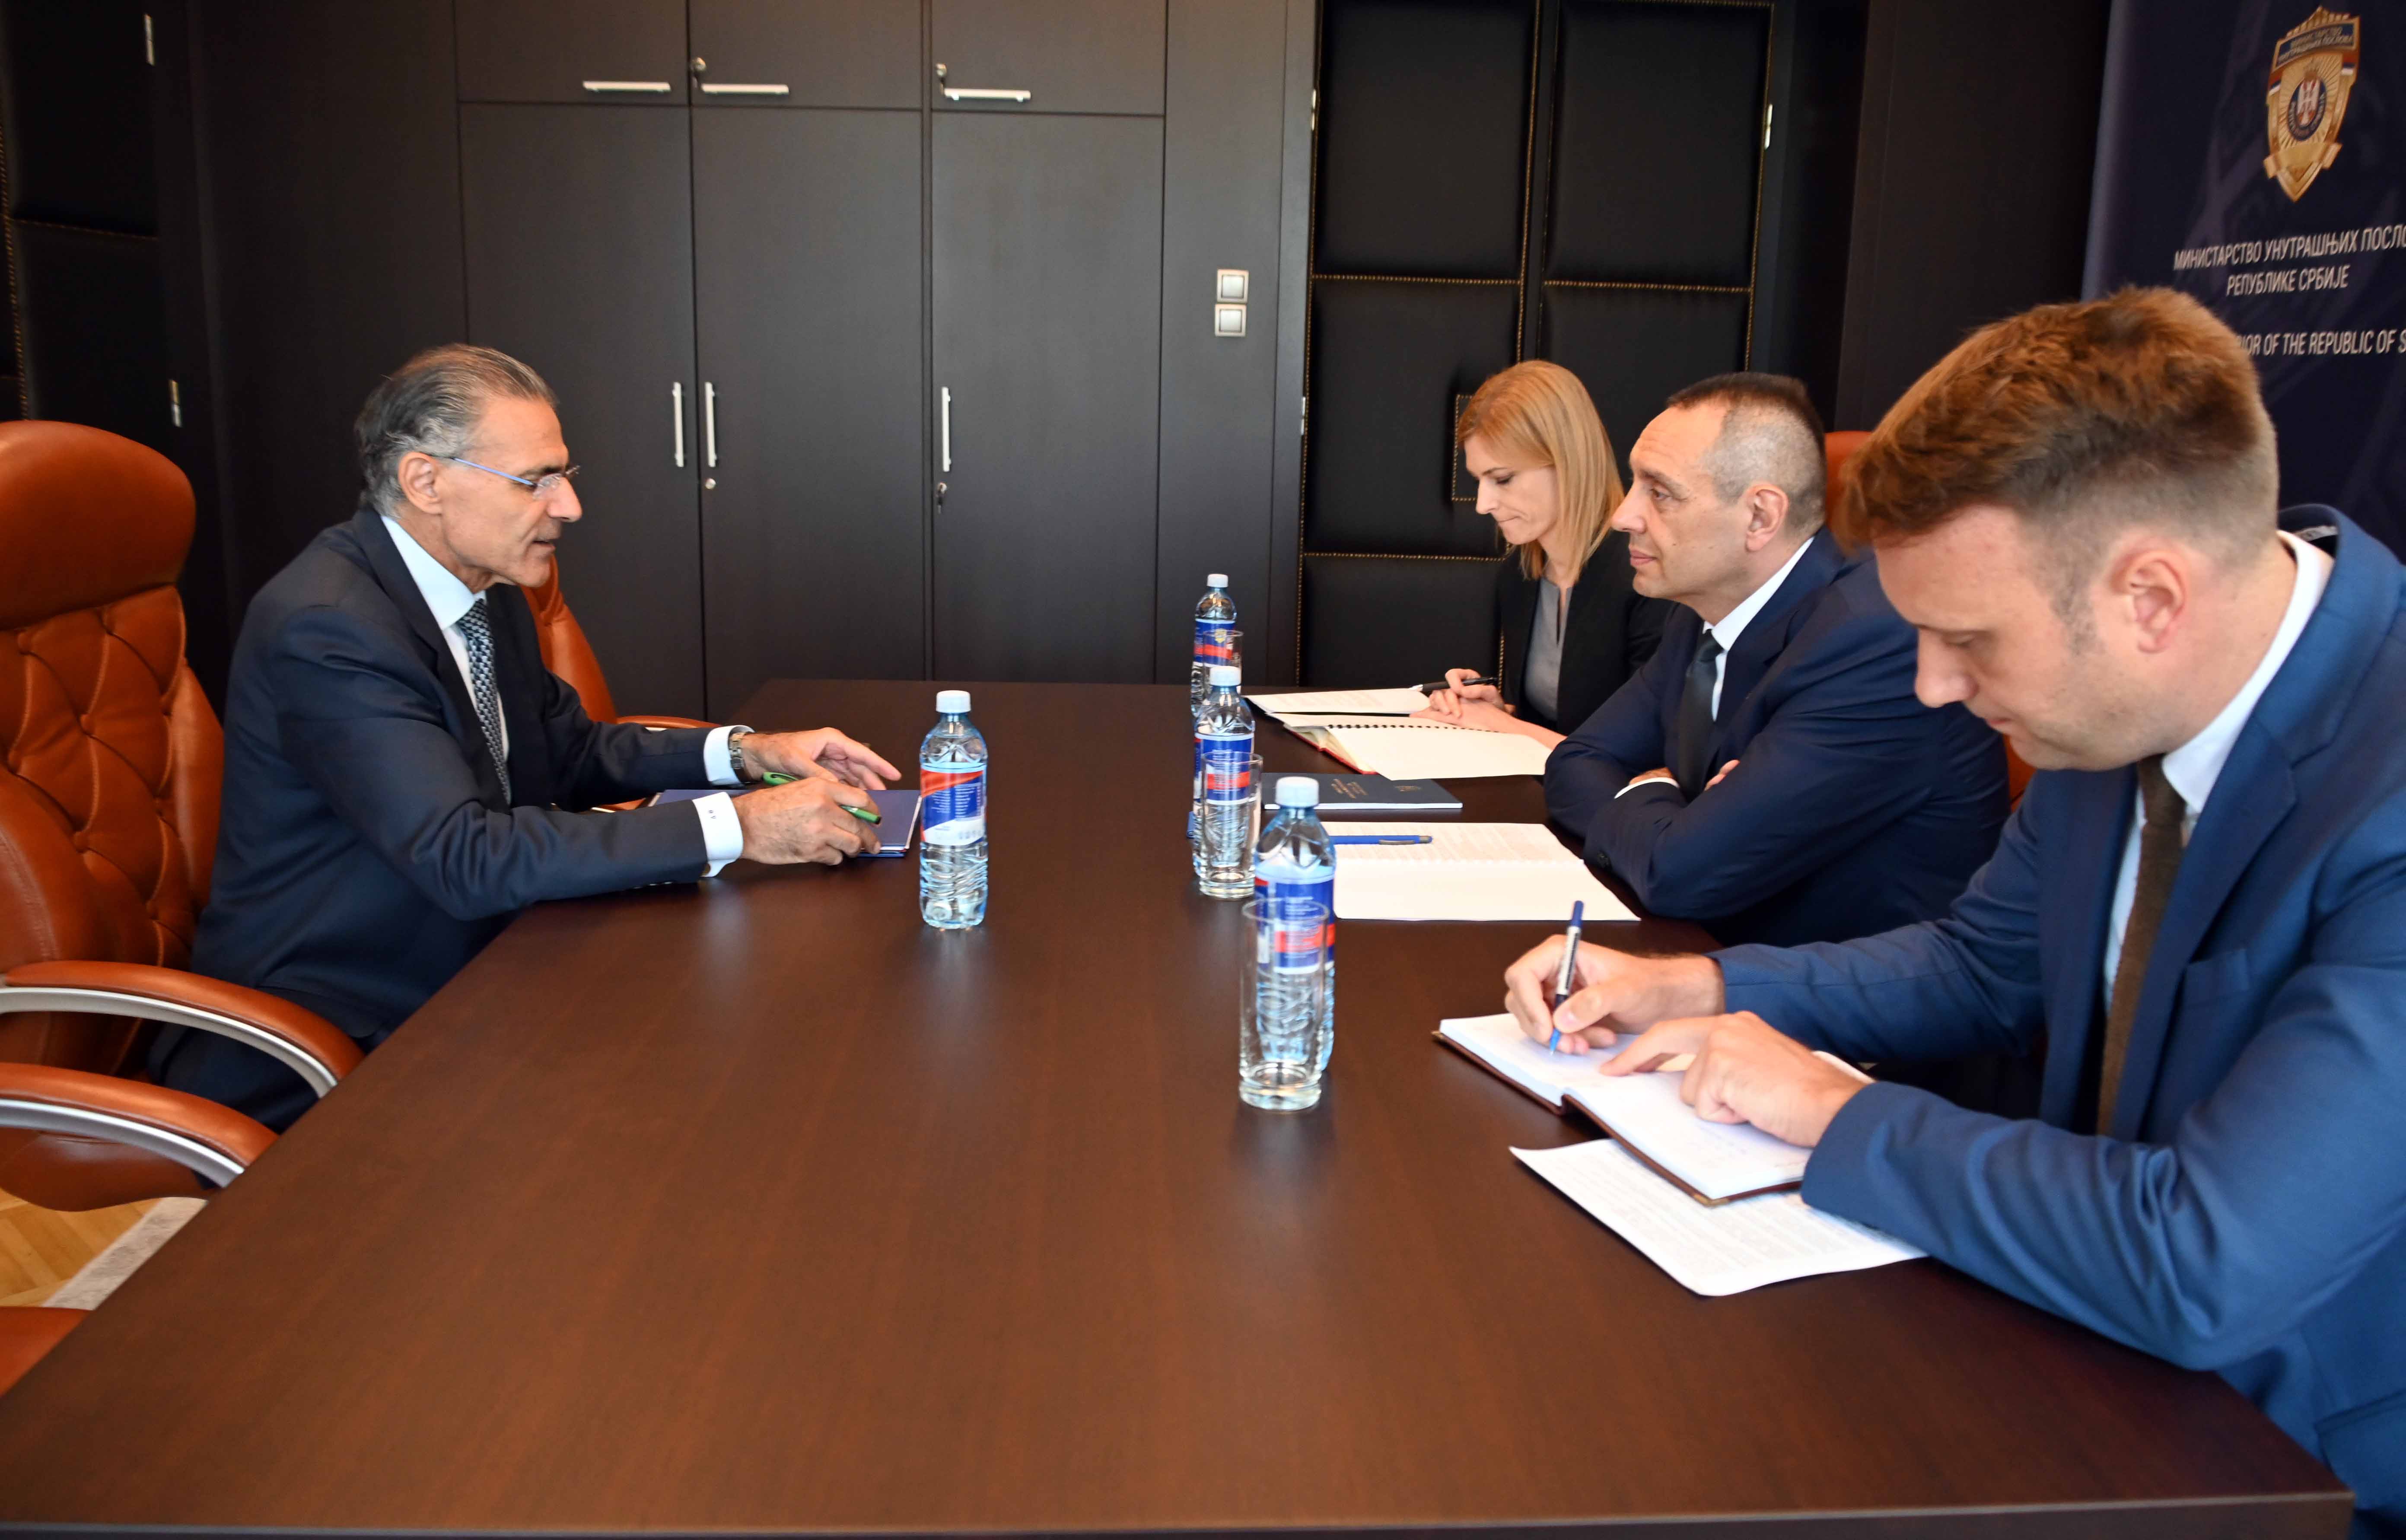 Ministar Aleksandar Vulin sastao se sa ambasadorom Republike Kipar Dimitriosom Teofilaktuom